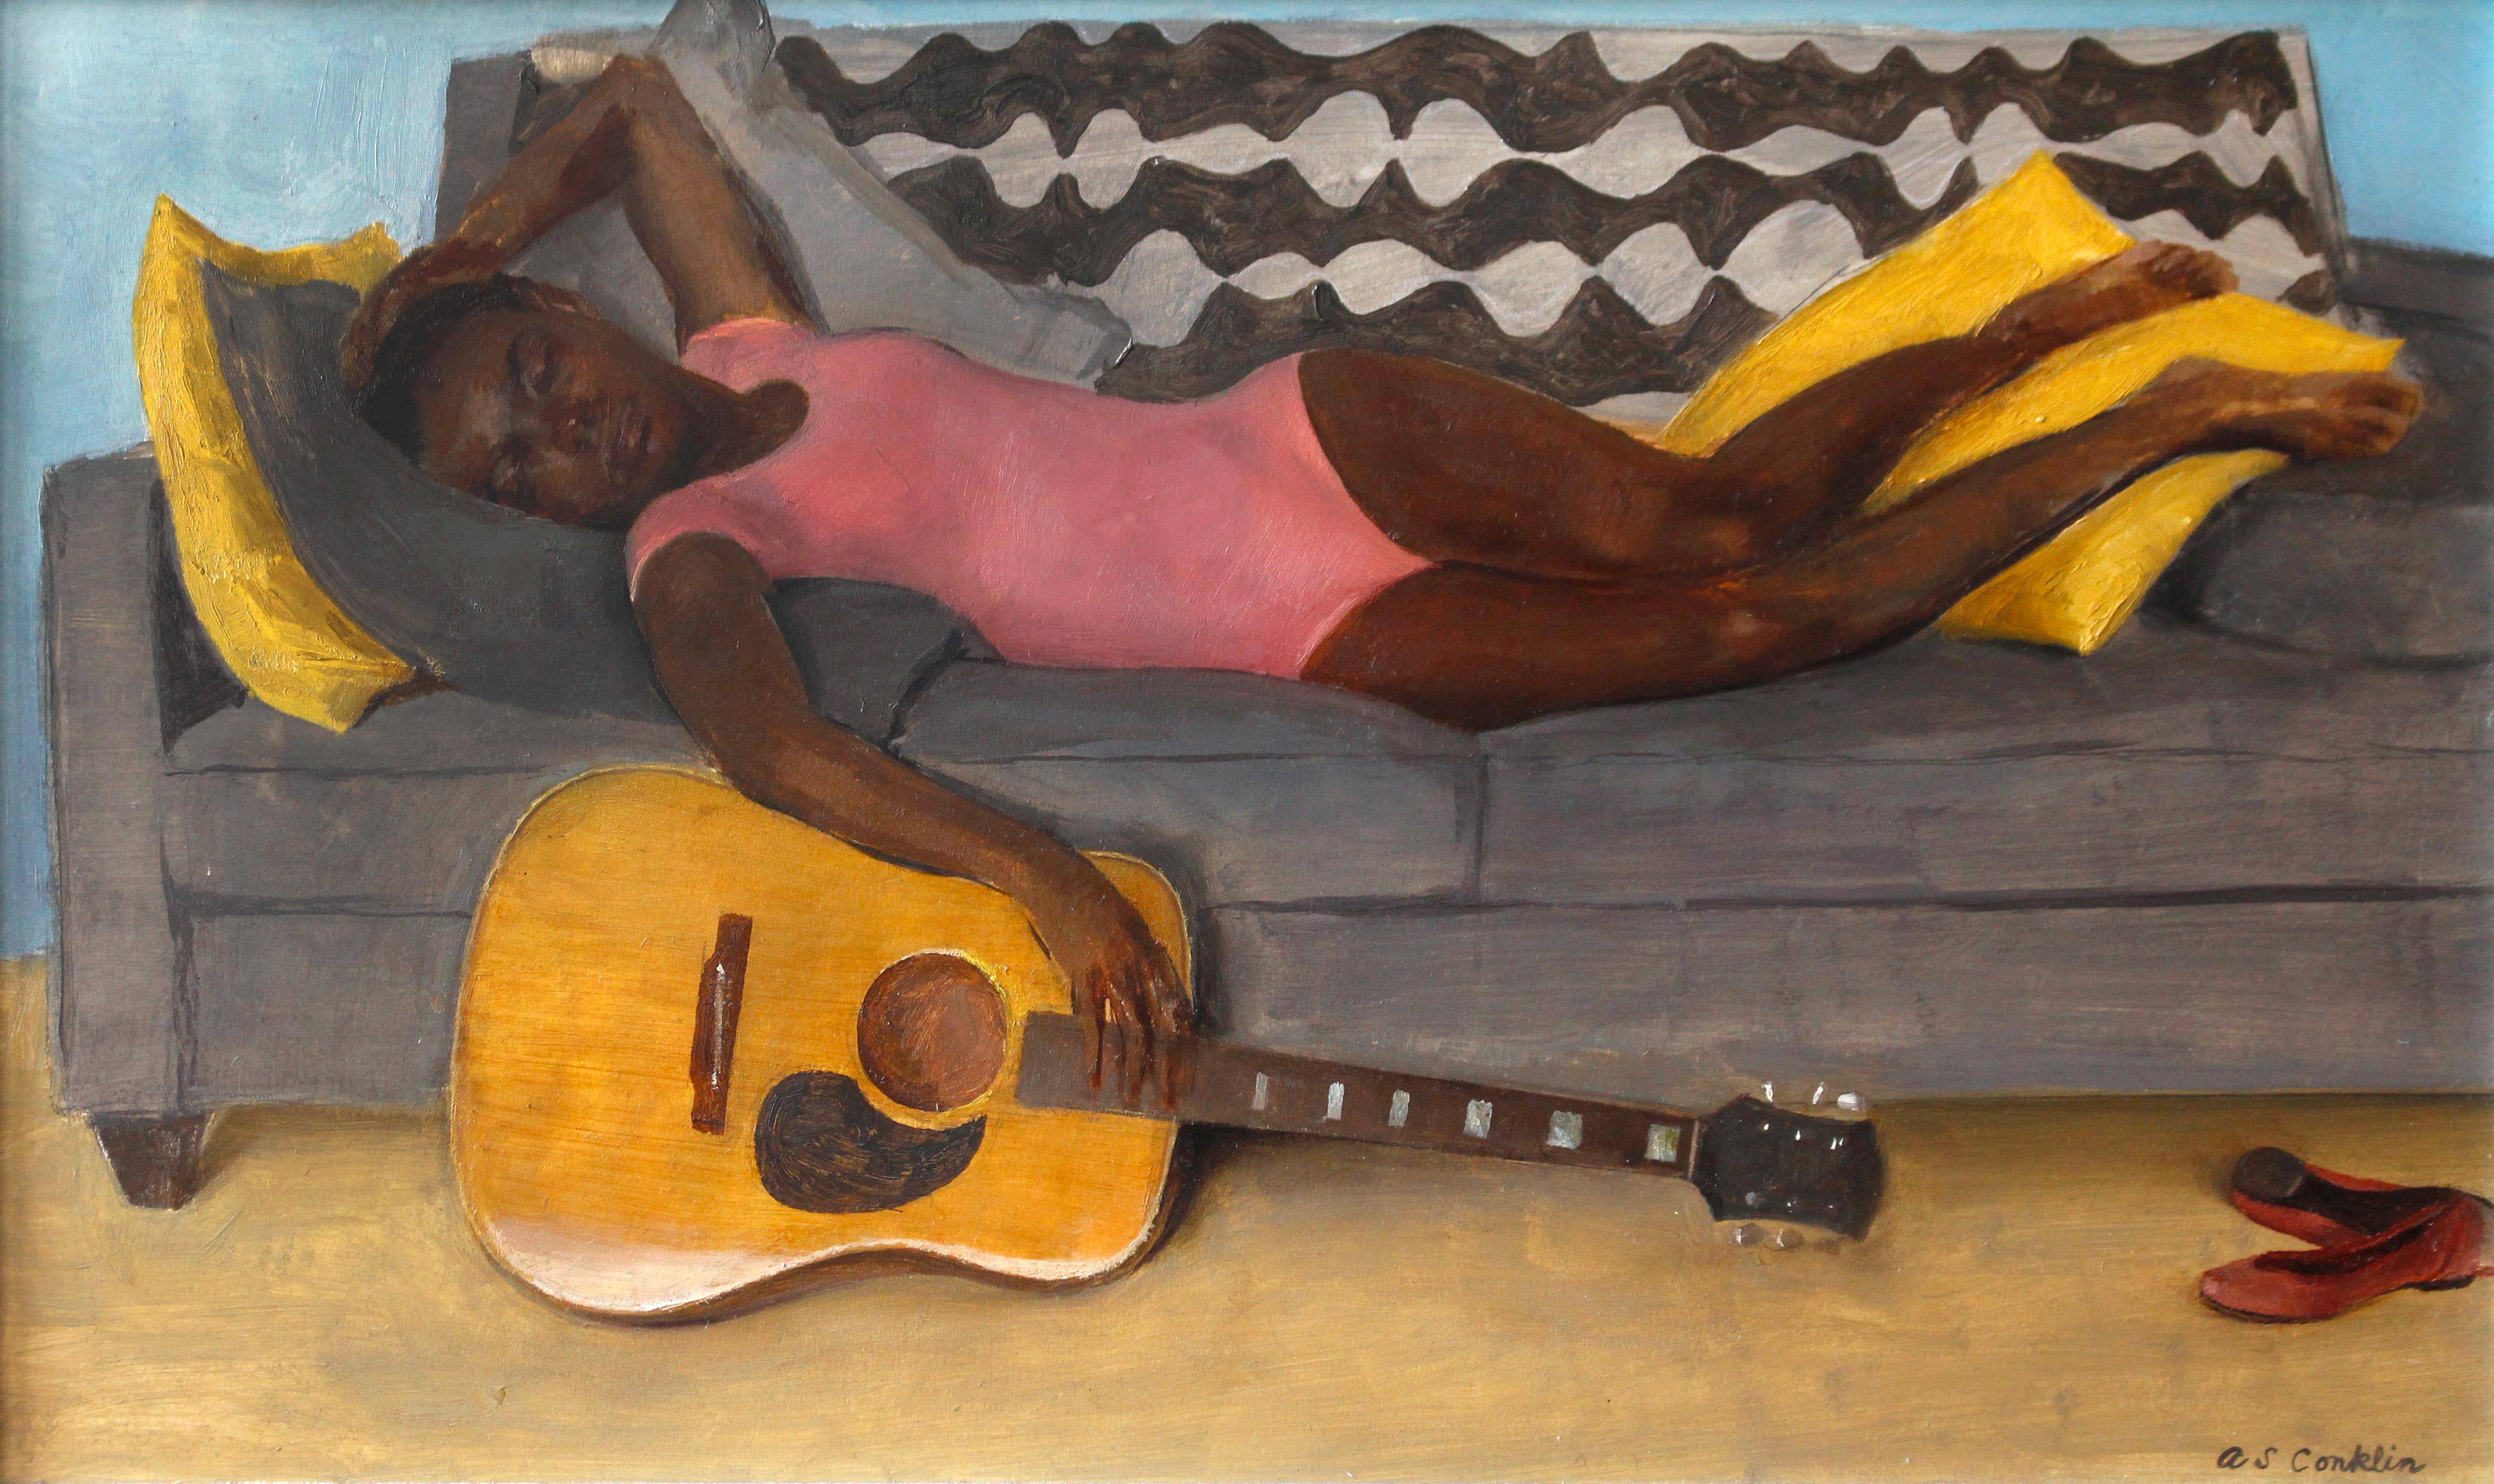 Nina couchée à la guitare - portrait à l'huile original d'une nature morte réaliste féminine